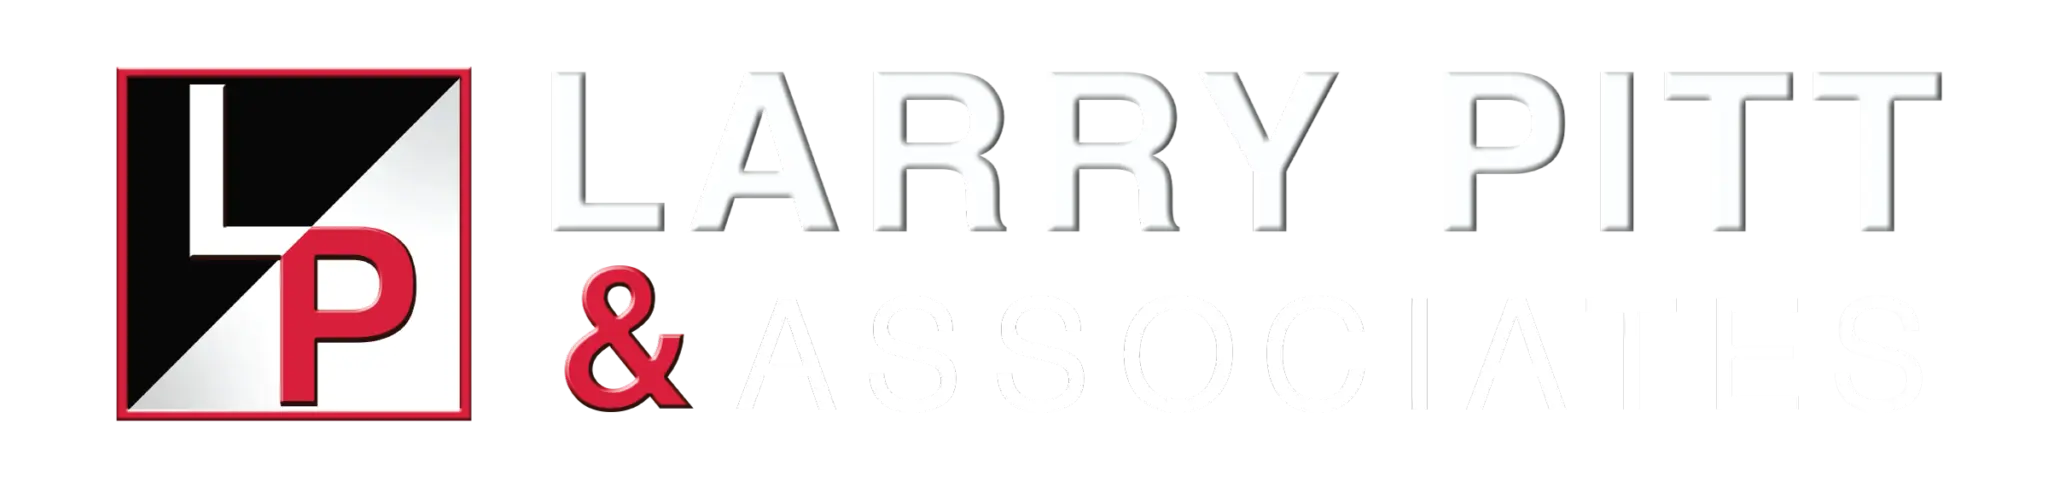 Larry Pitt & Associates full logo